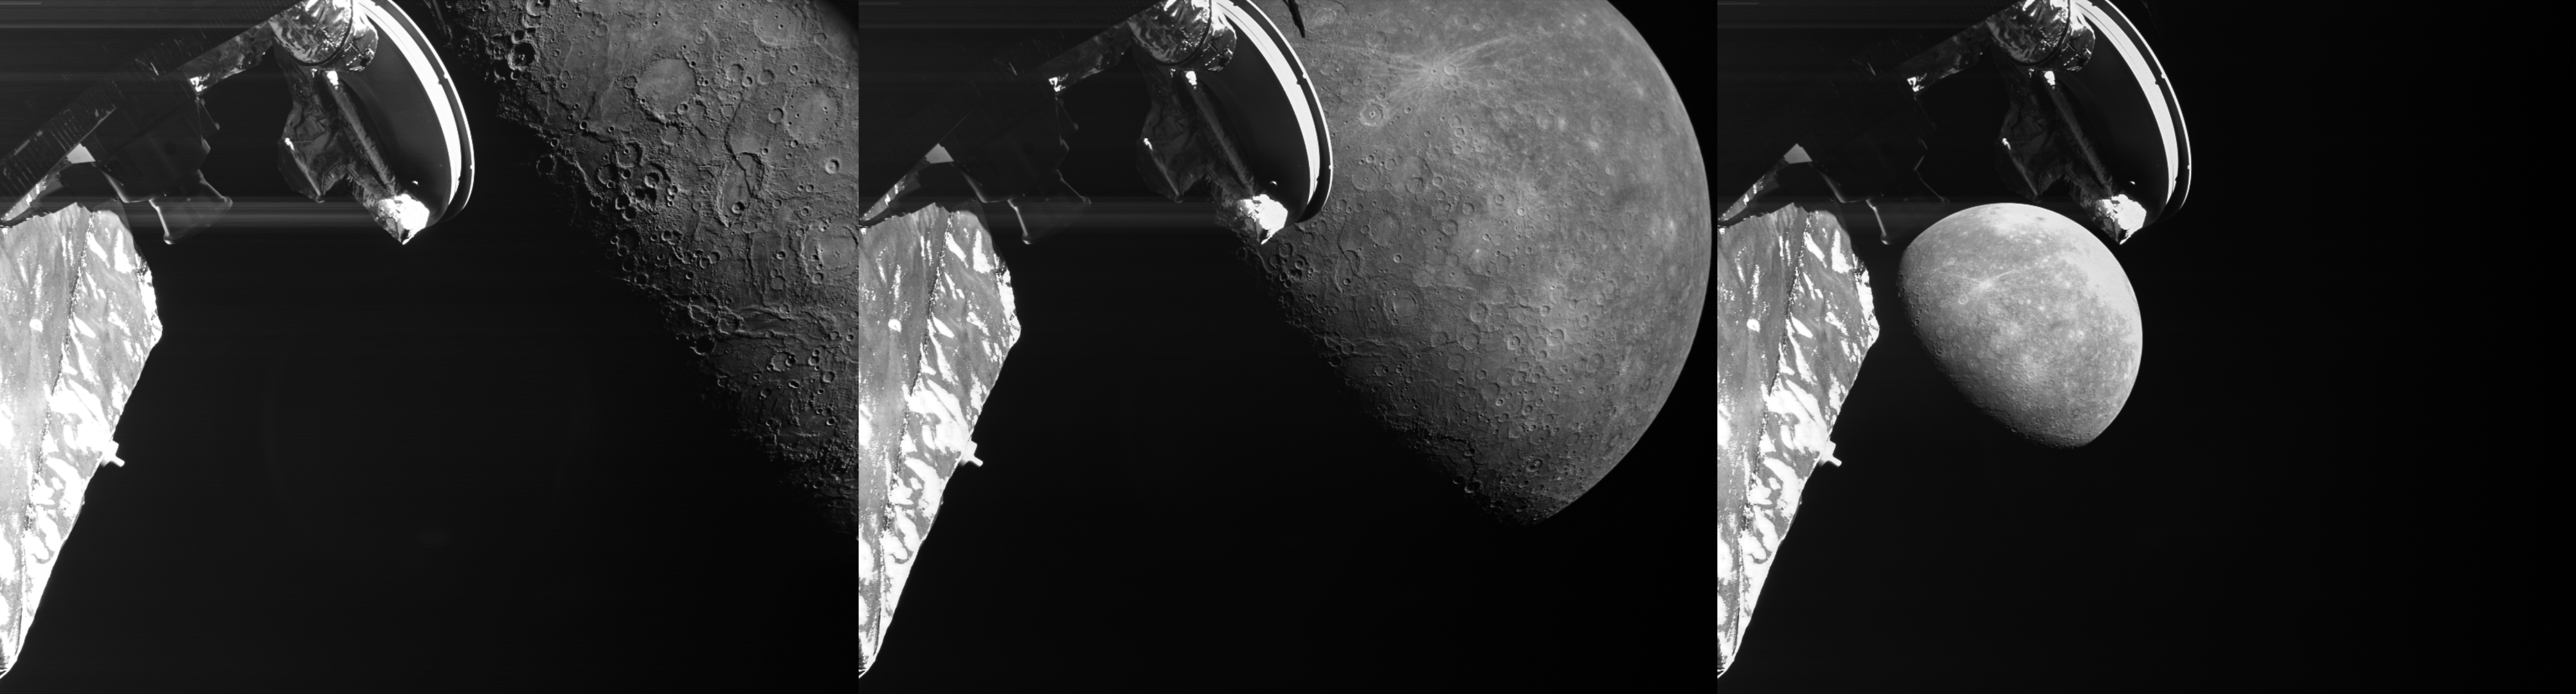 そのうちの 3 つの画像は、水星の 3 回目のベピコロンボ飛行をハイライトしています。